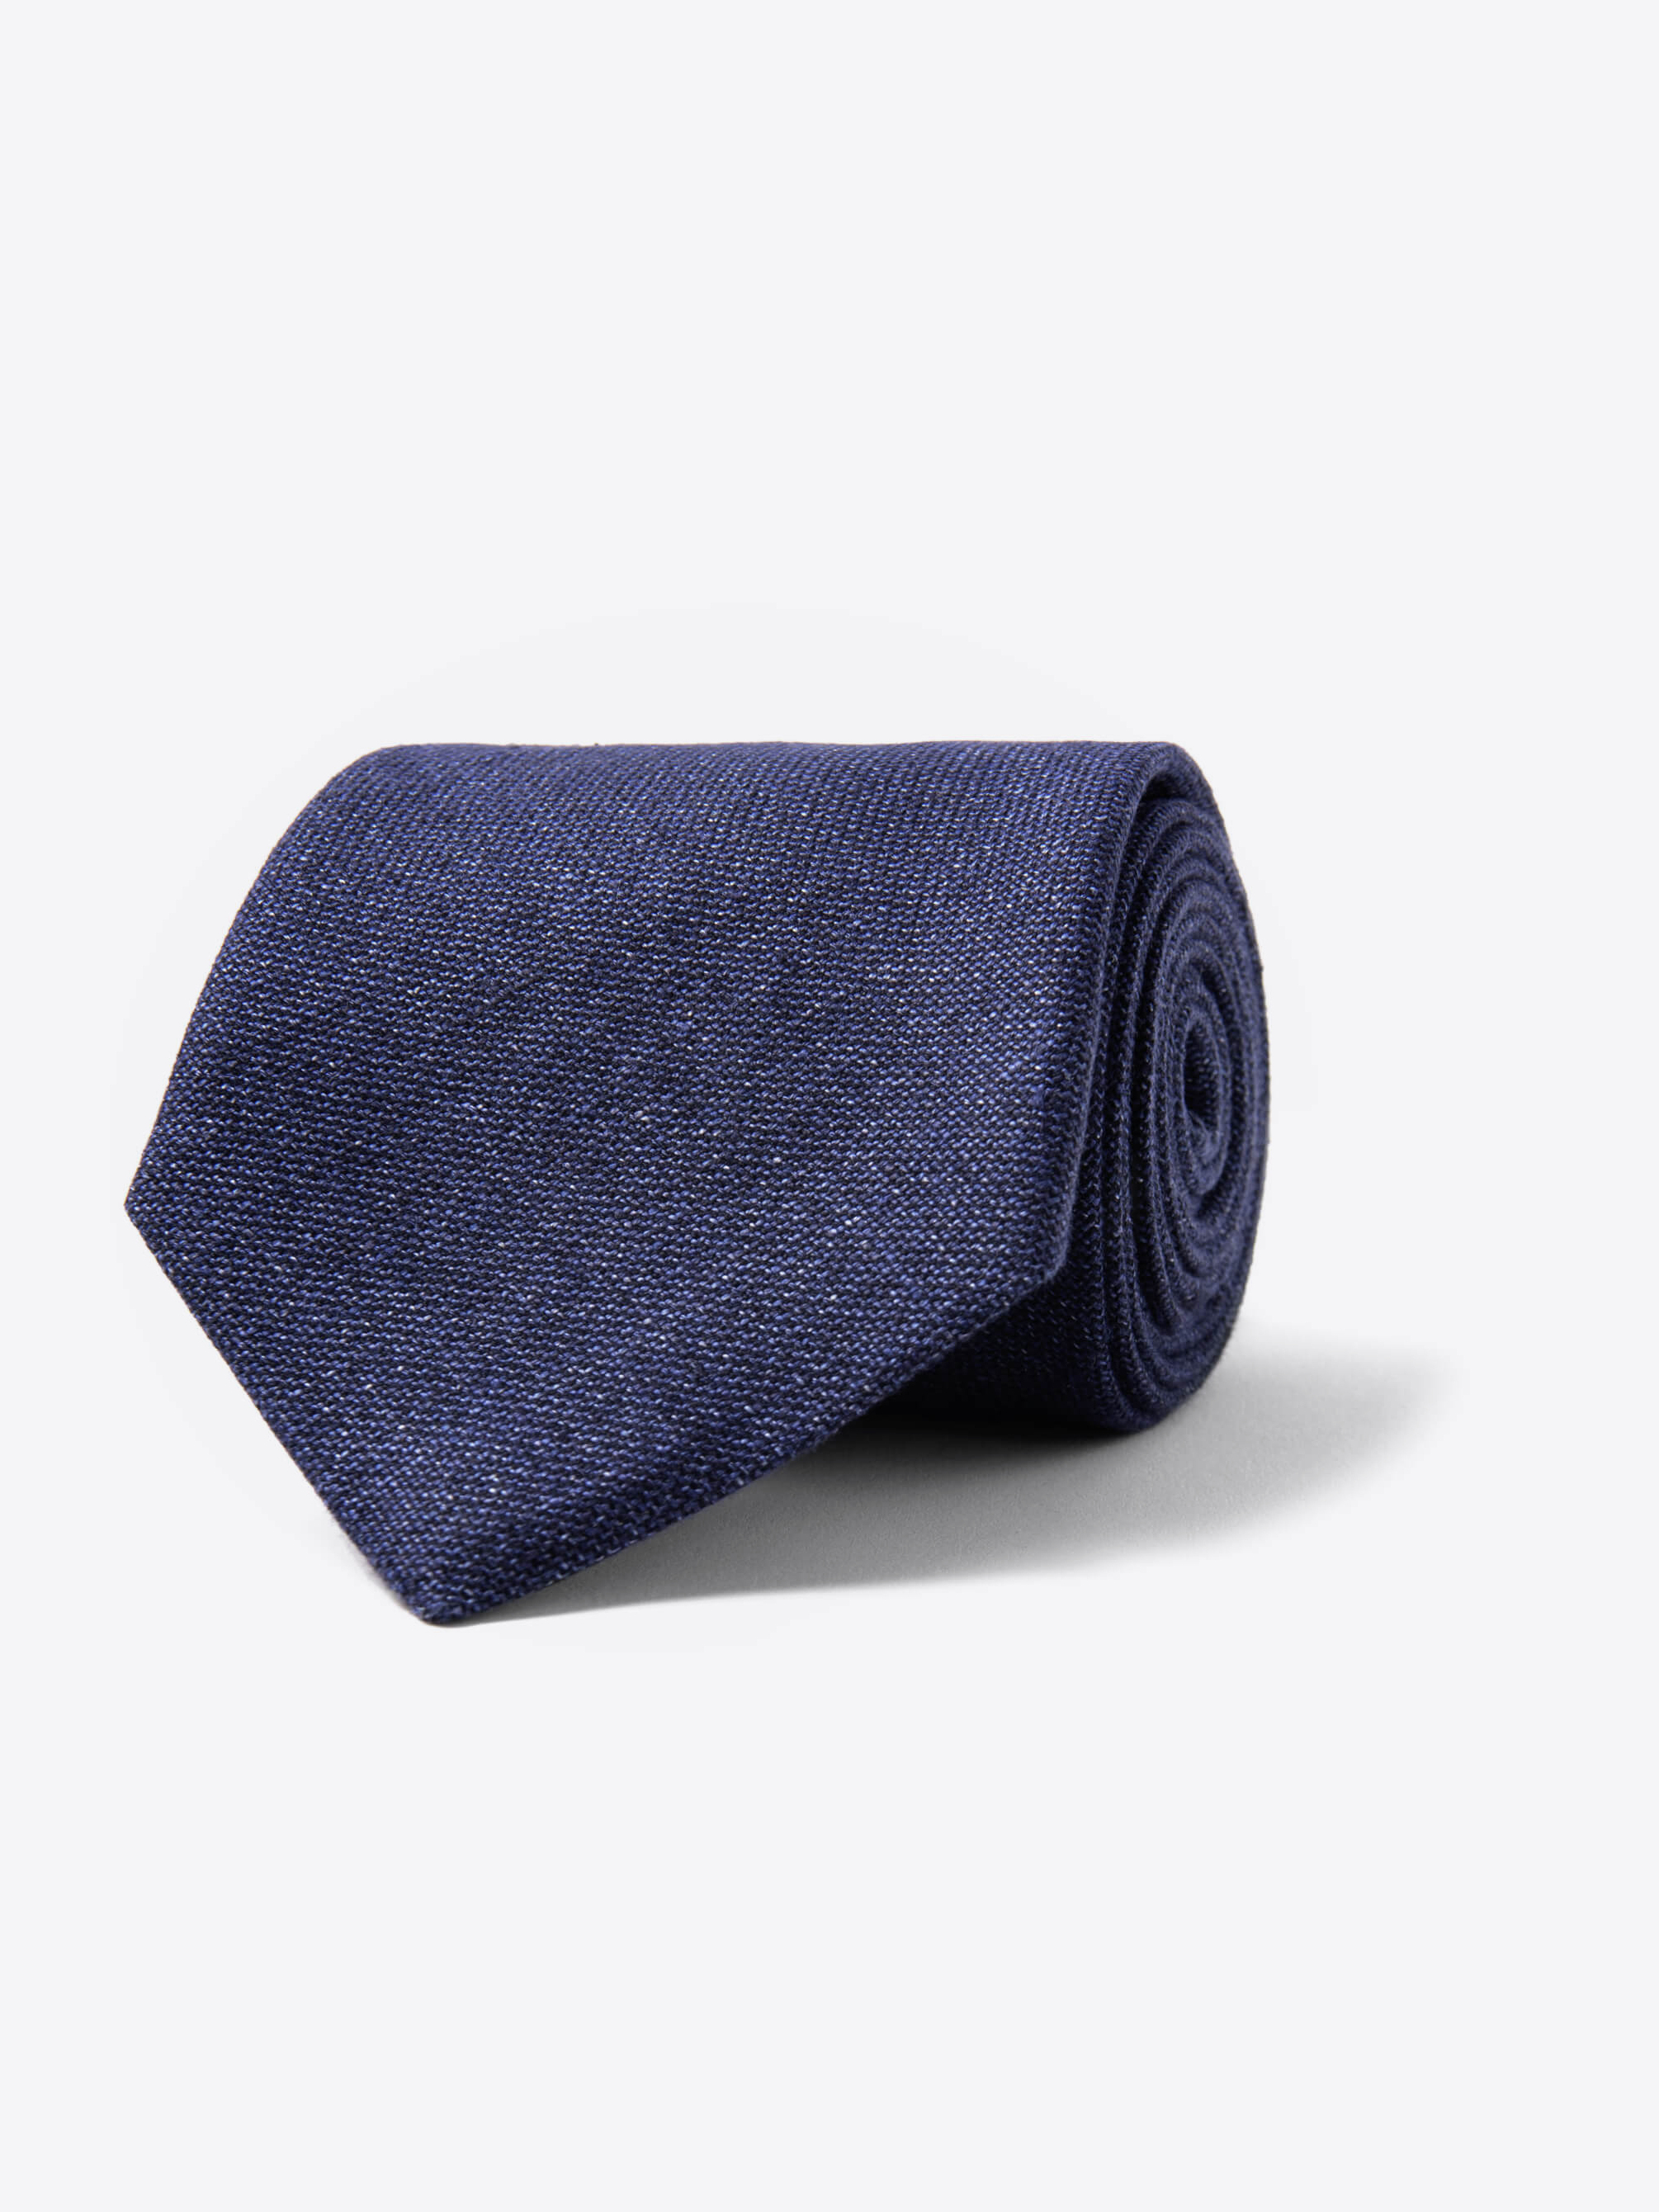 Zoom Image of Navy Hemp and Wool Tie